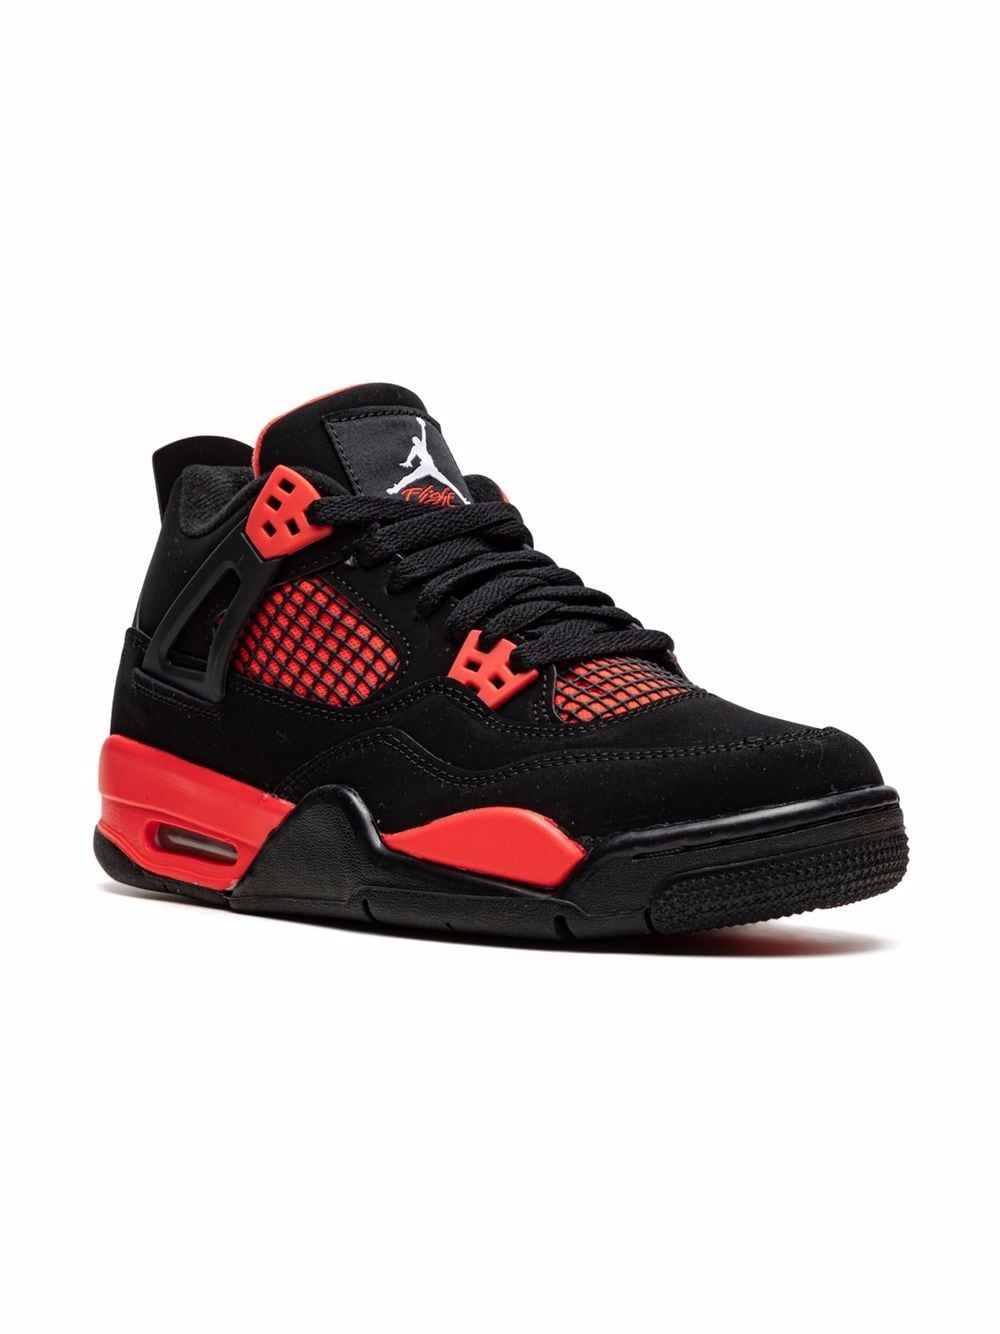 Image 1 of Jordan Kids Air Jordan 4 Retro "Red Thunder" sneakers